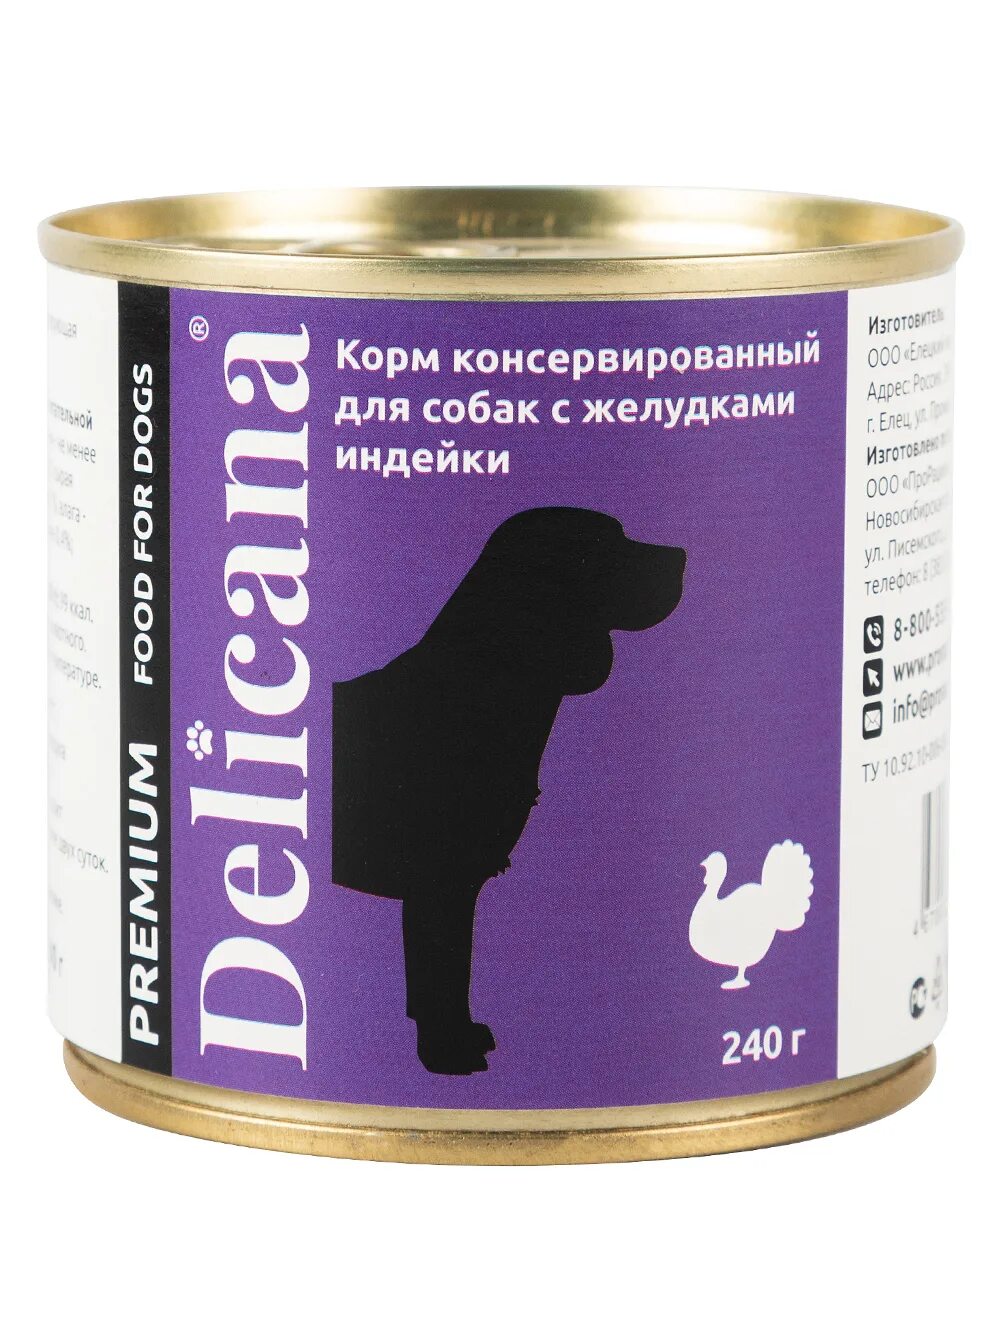 Консервированные корма для собак. Корм деликана для собак. Delicana консервы для собак 12 штук. Корм для собак в консерве. Деликана консервы для кошек.